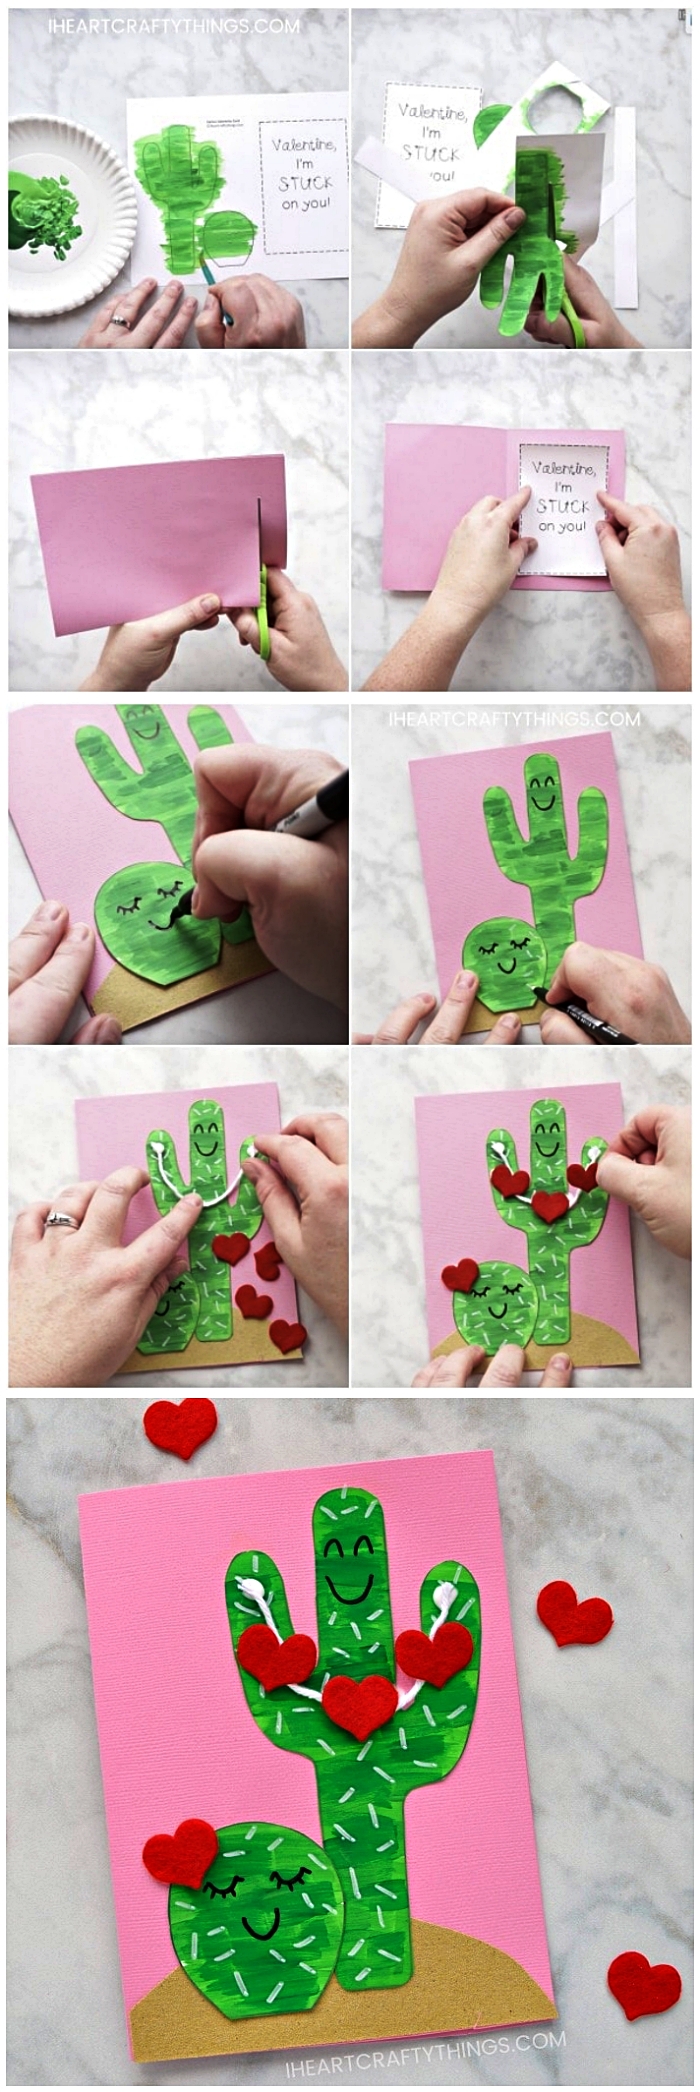 carte pour la fête des mères avec des cactus kawaii décorés de coeurs en papier, carte cactus à faire avec les enfants de la maternelle pour souhaiter bonne fête des mères